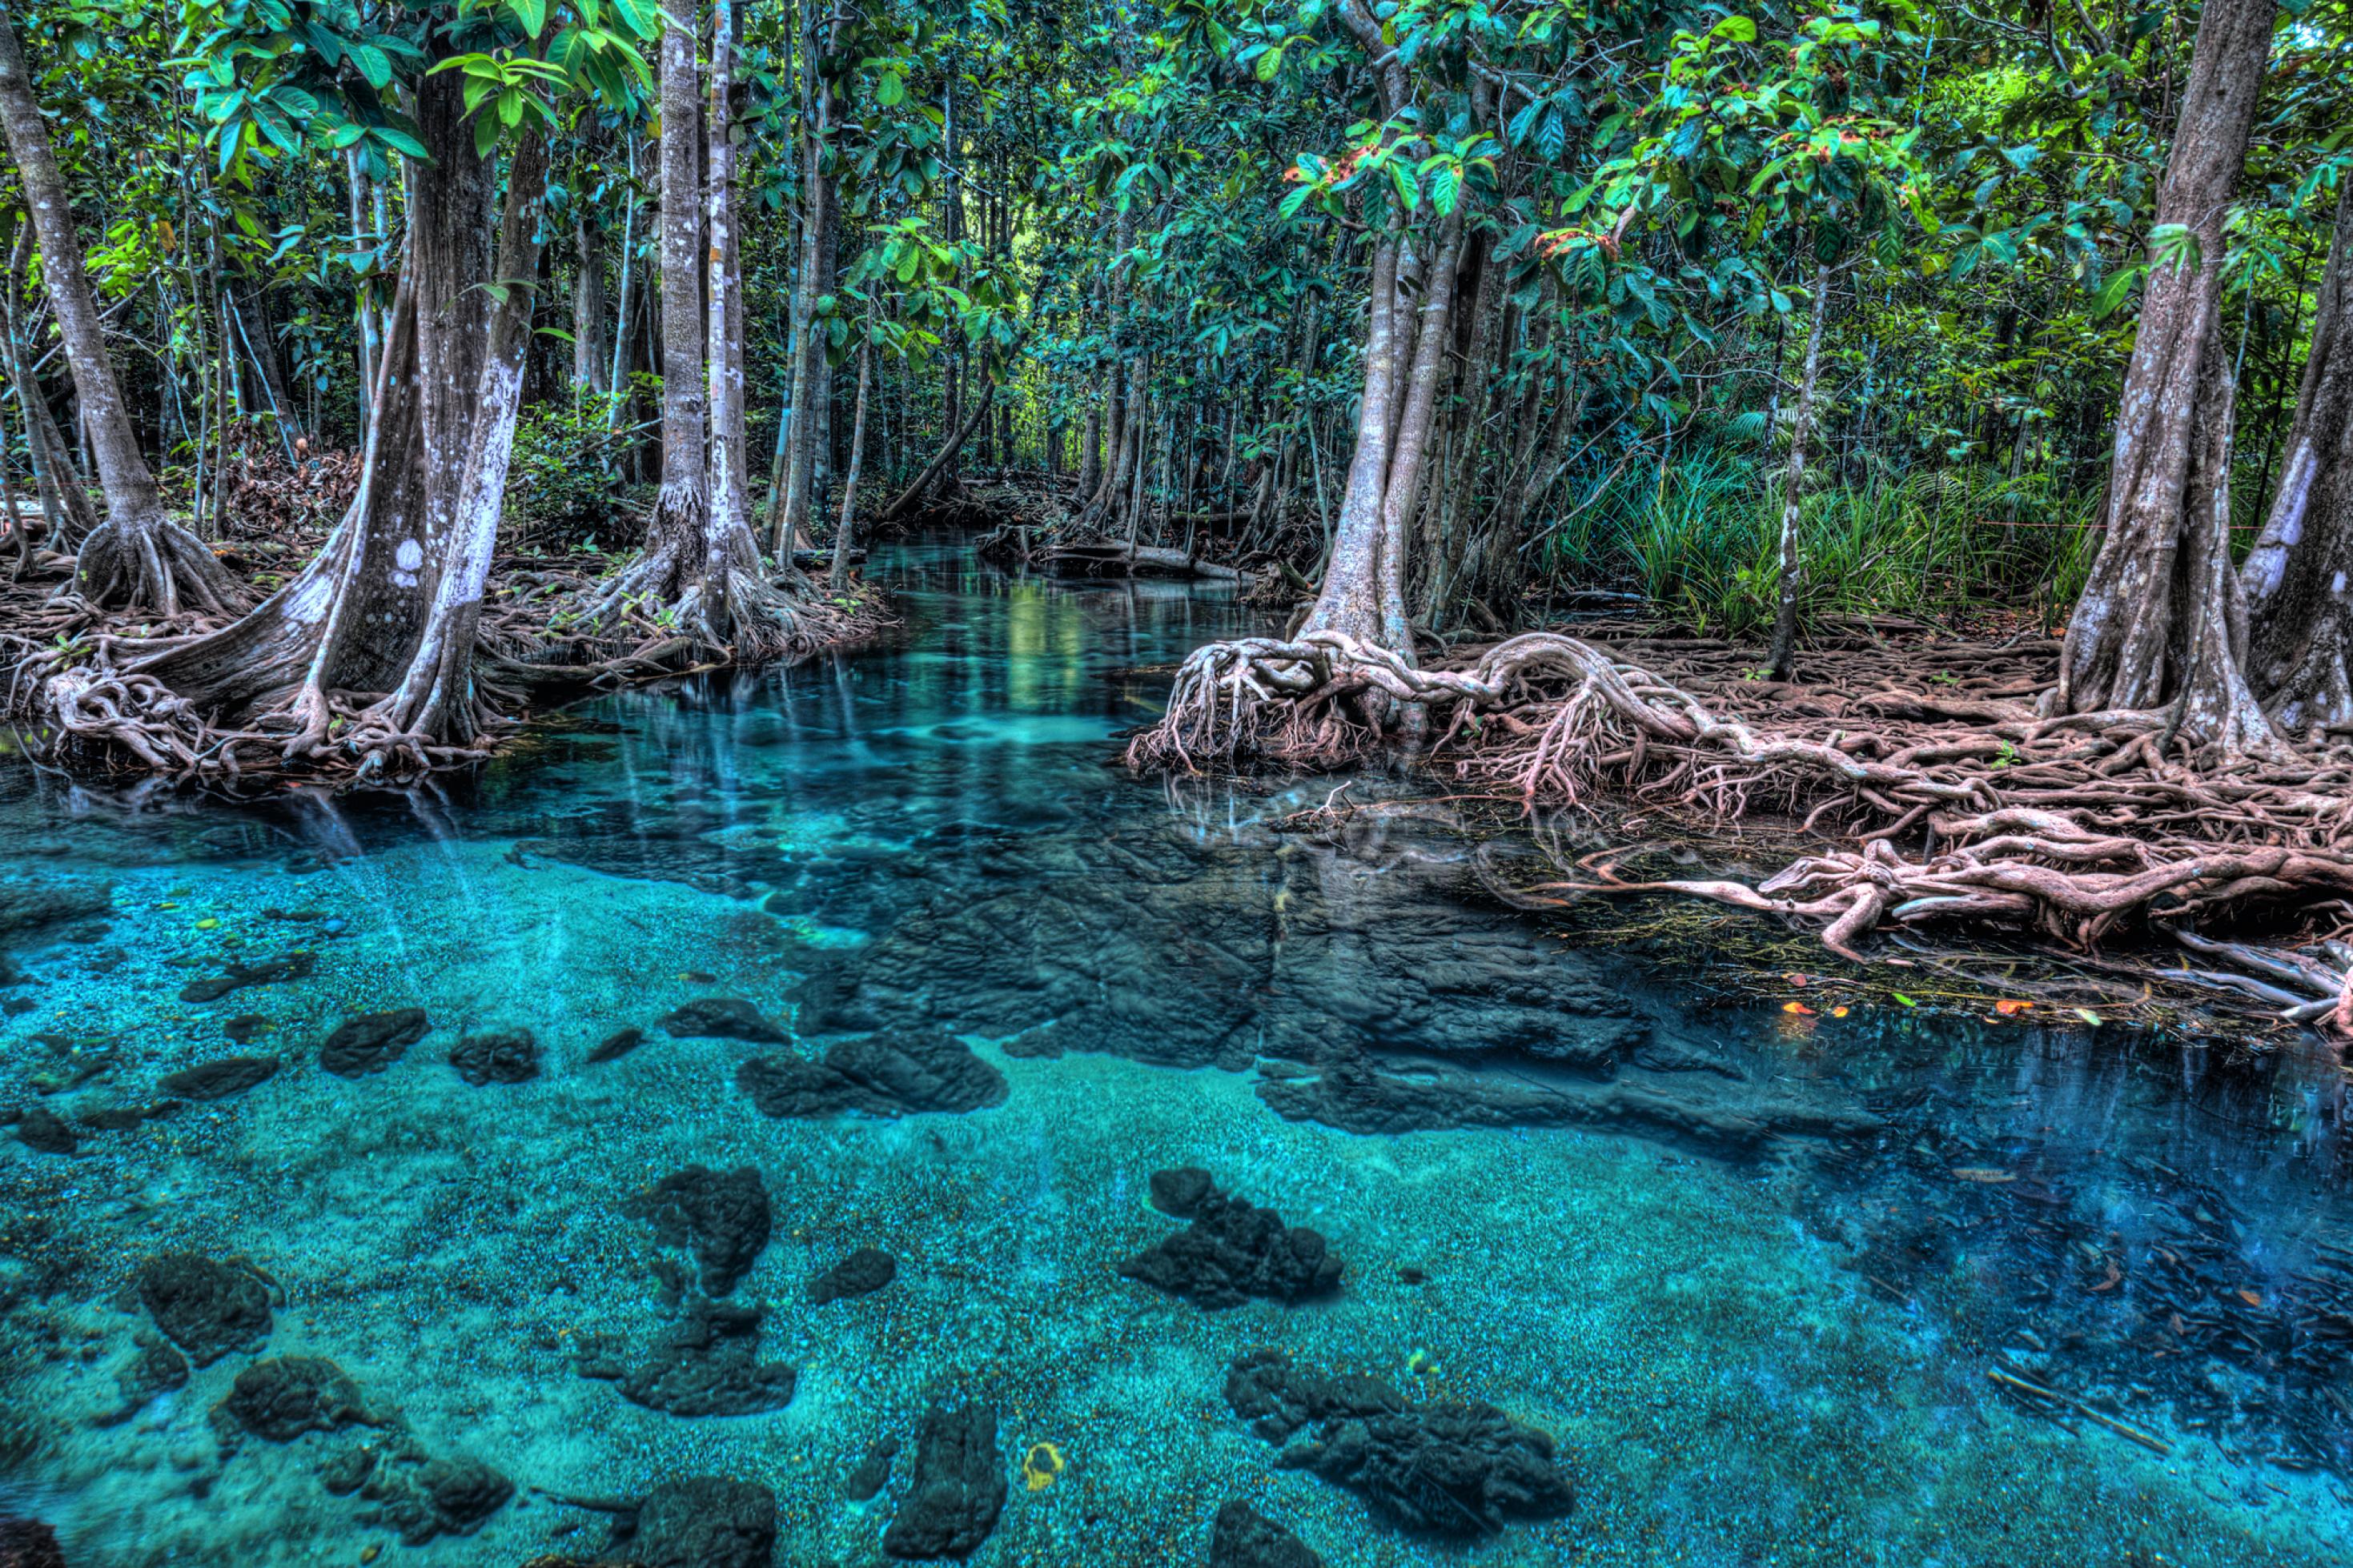 Das Bild zeigen einen Mangrovenwald, der direkt am Meer wächst. Das Wasser ist hellblau und durchsichtig, die Bäume haben geheimnisvoll verschlungene Stämme und Äste.